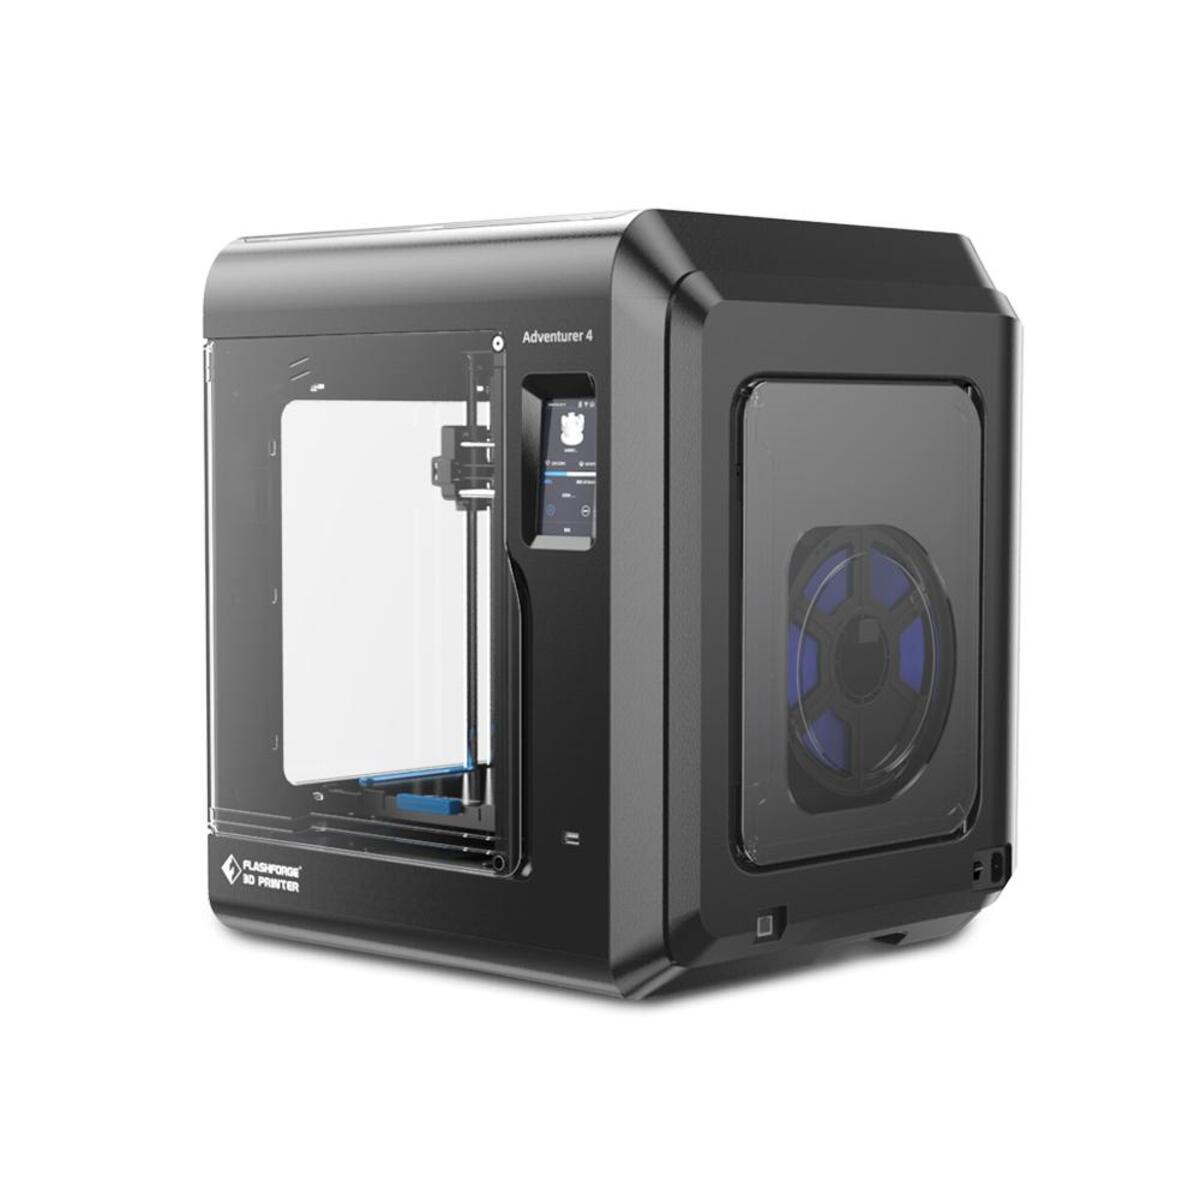 FLASCHFORGE 3D Printer 4 - Adventurer FDM Drucker 3D